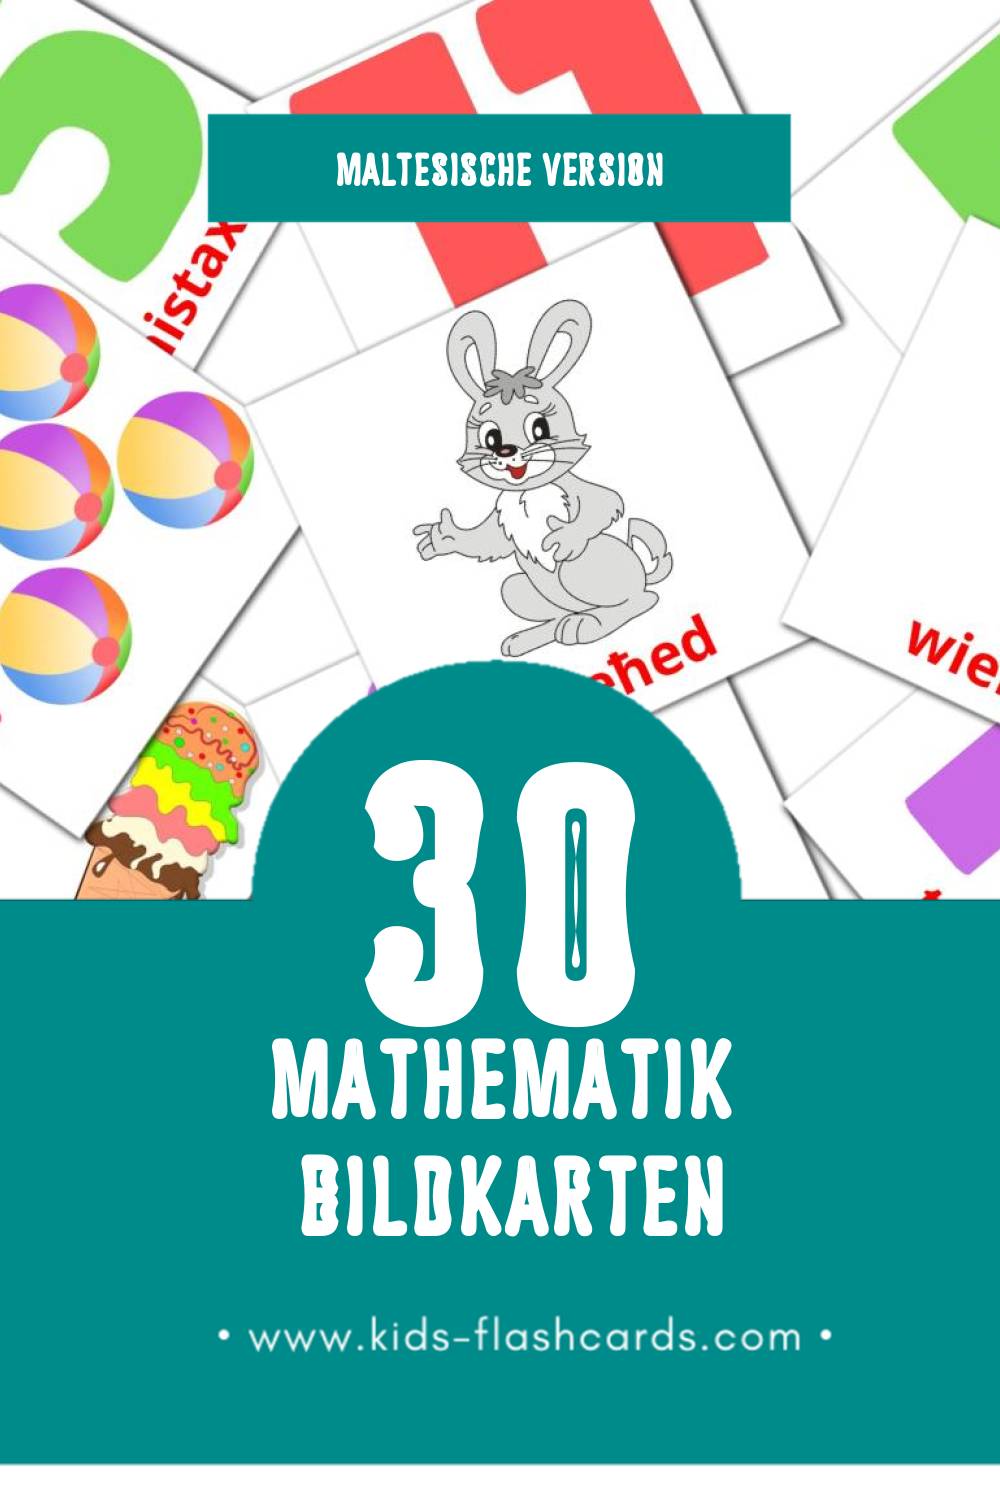 Visual Matematika Flashcards für Kleinkinder (30 Karten in Maltesisch)